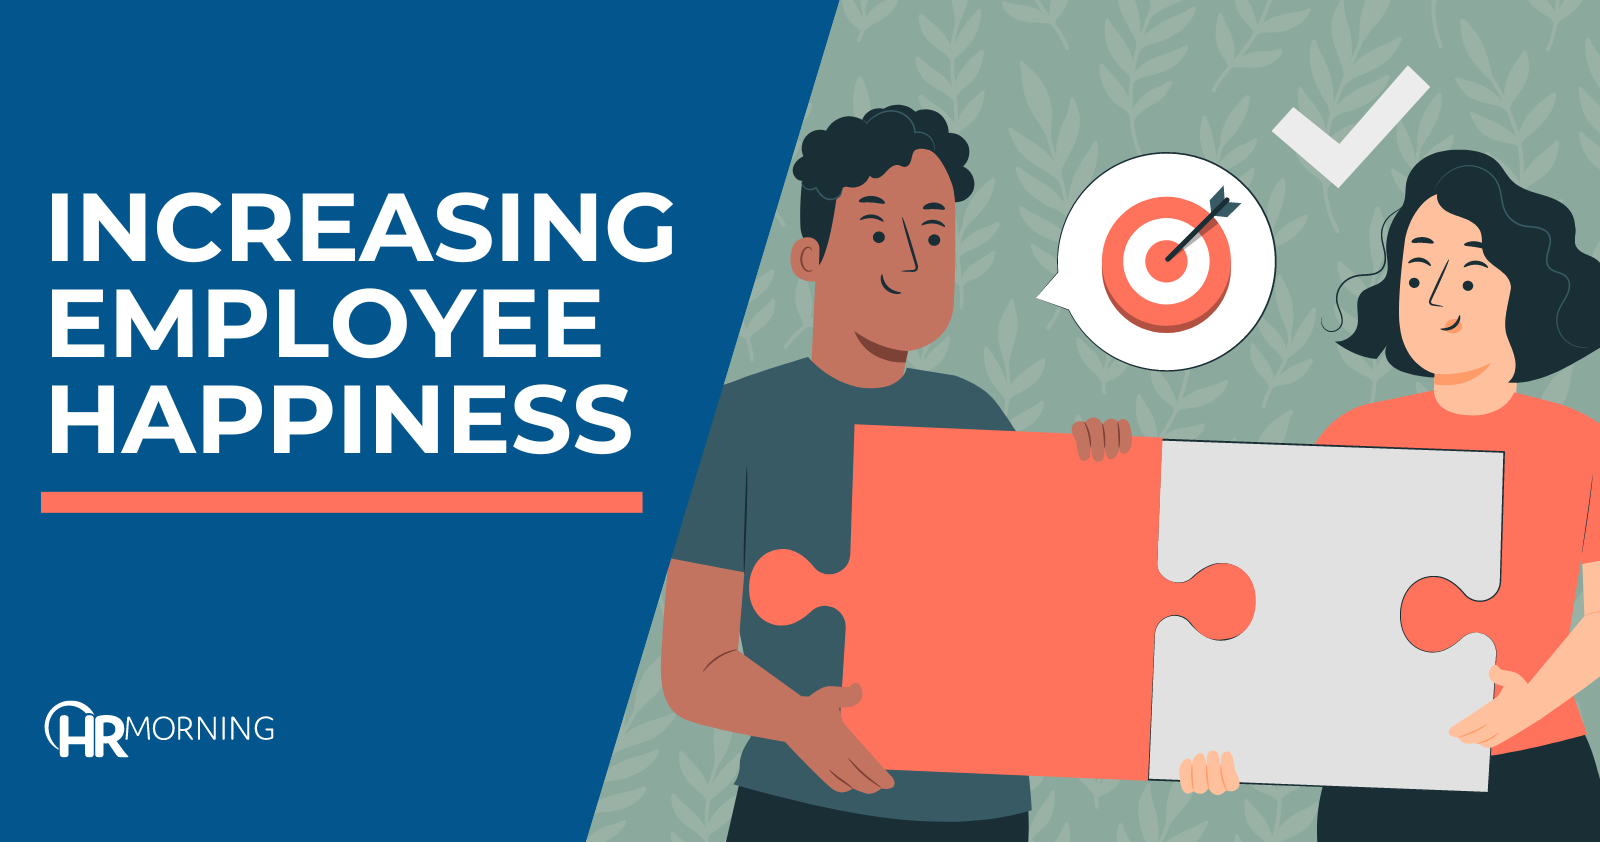 Increasing employee happiness